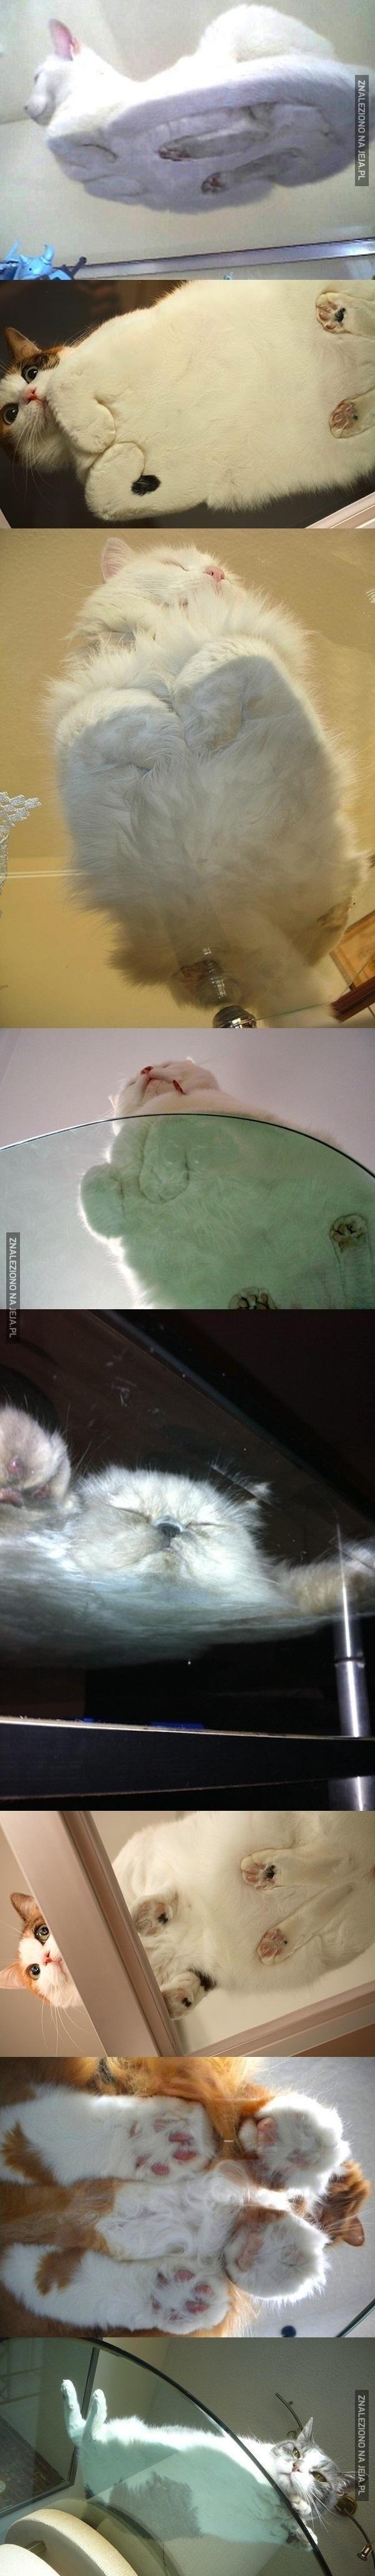 Śmieszne zdjęcia kotów spod szkła